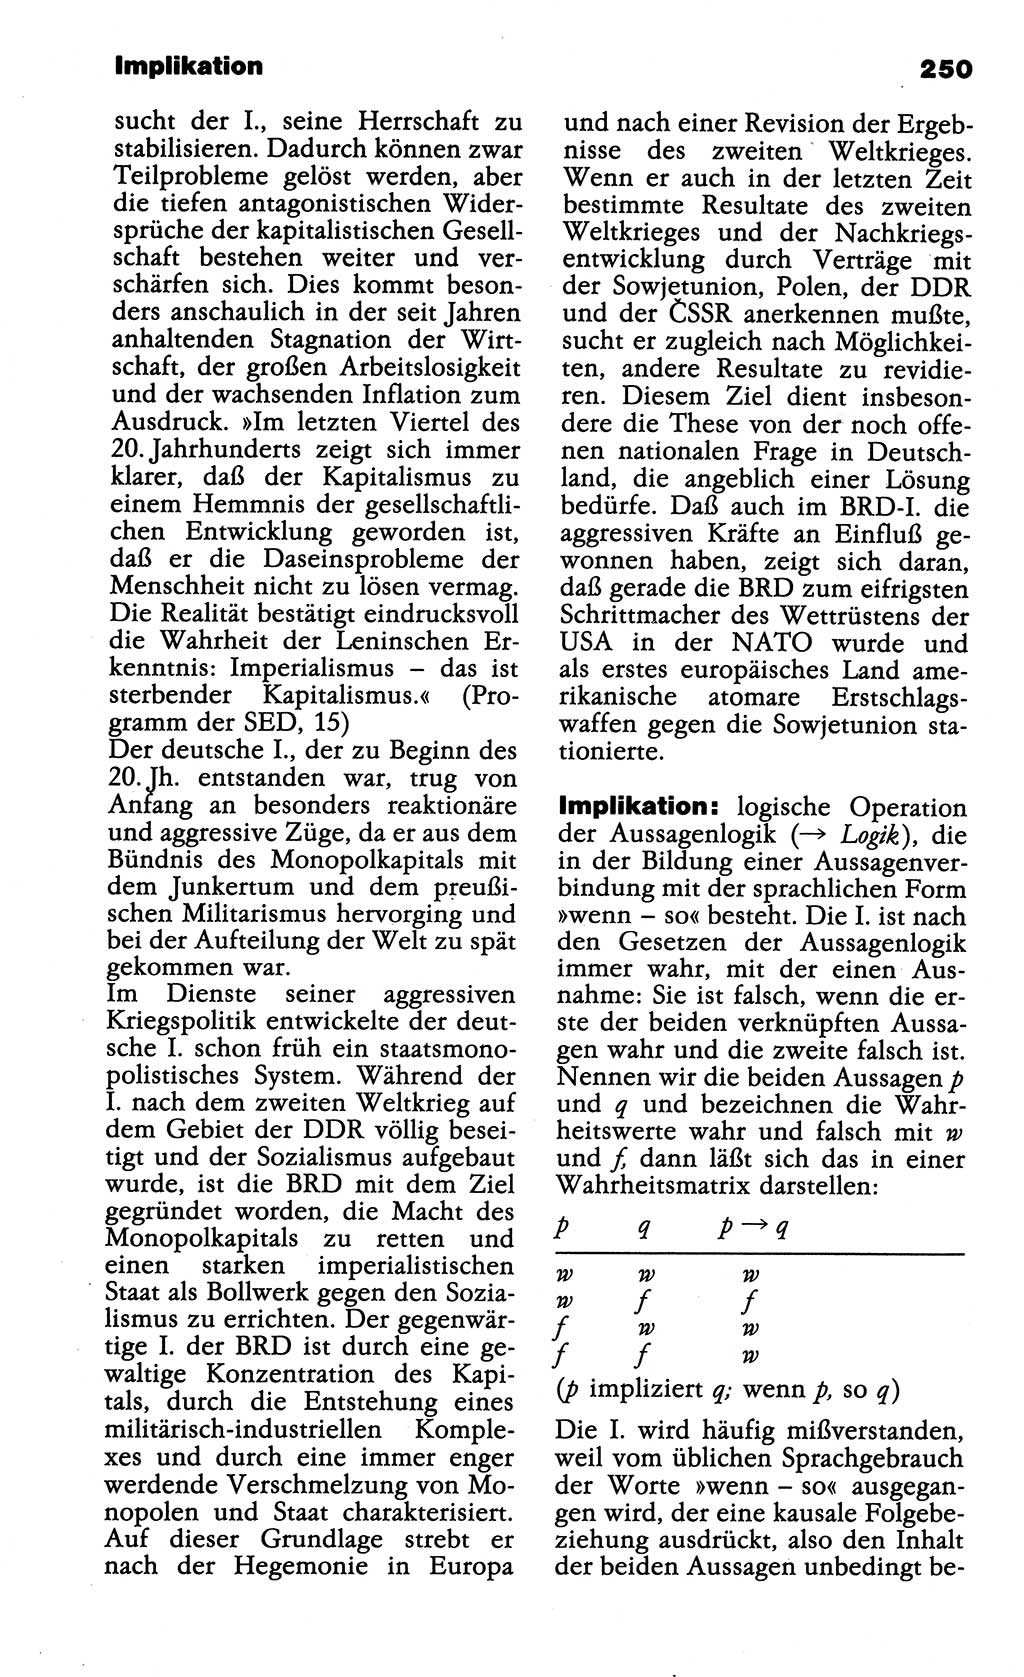 Wörterbuch der marxistisch-leninistischen Philosophie [Deutsche Demokratische Republik (DDR)] 1985, Seite 250 (Wb. ML Phil. DDR 1985, S. 250)